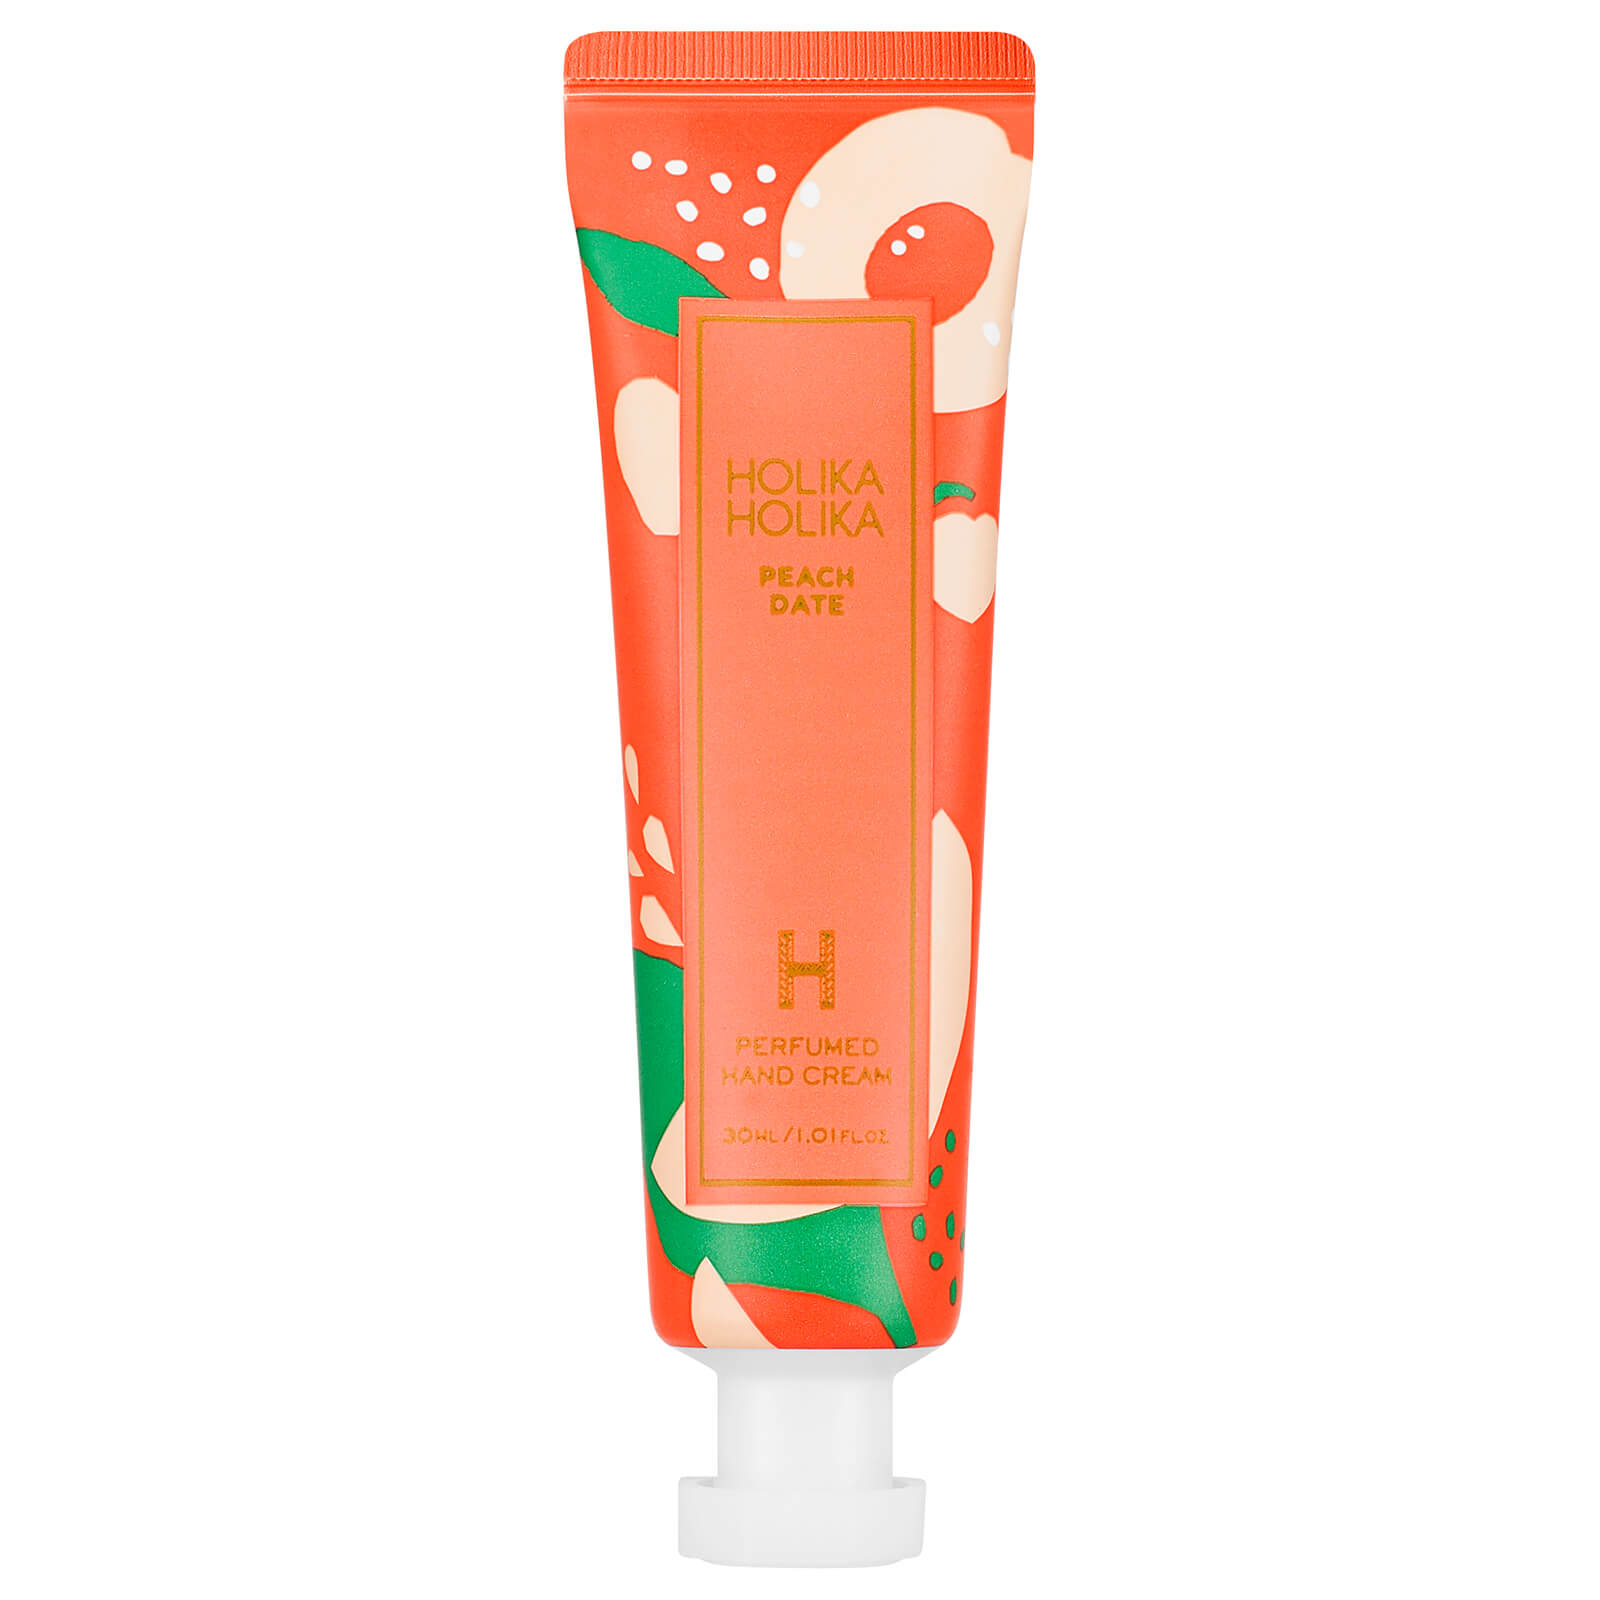 Holika Holika Peach Date Perfumed Hand Cream von Holika Holika